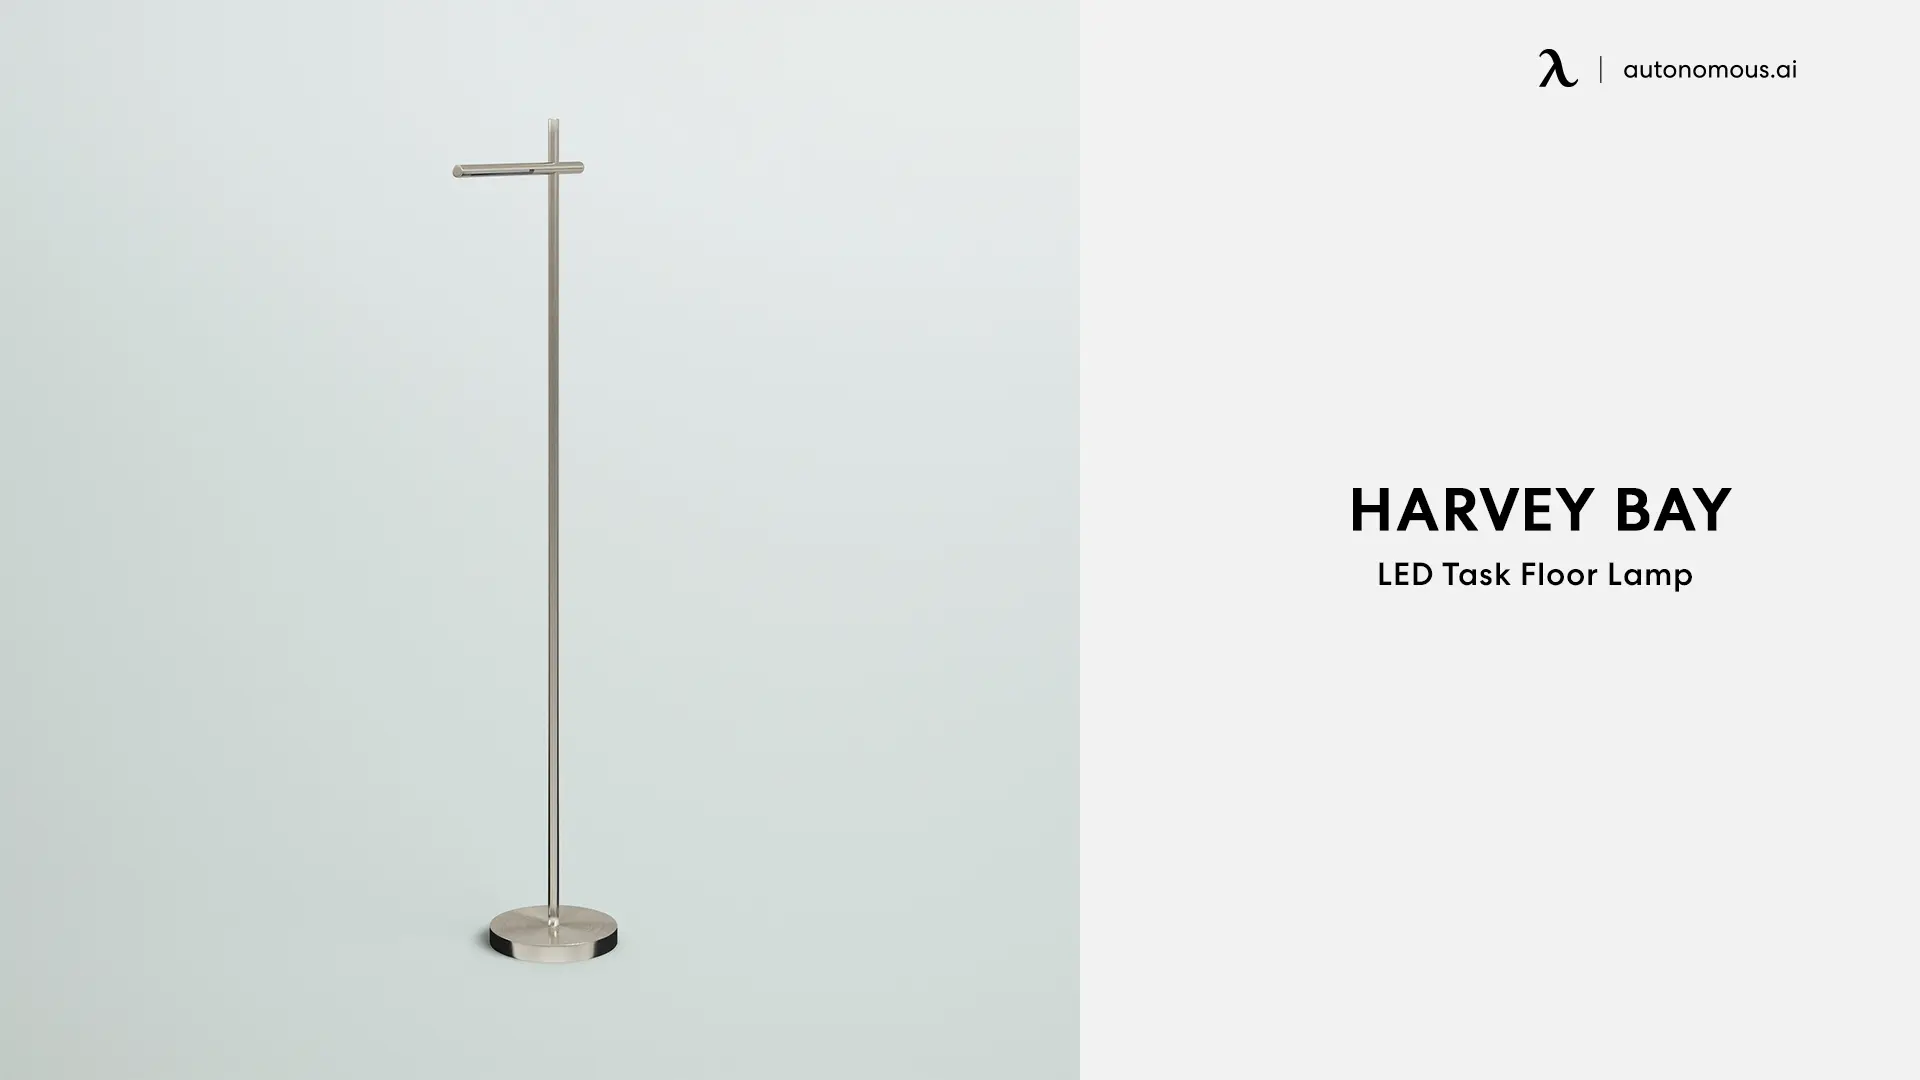 Harvey Bay LED Task Floor Lamp